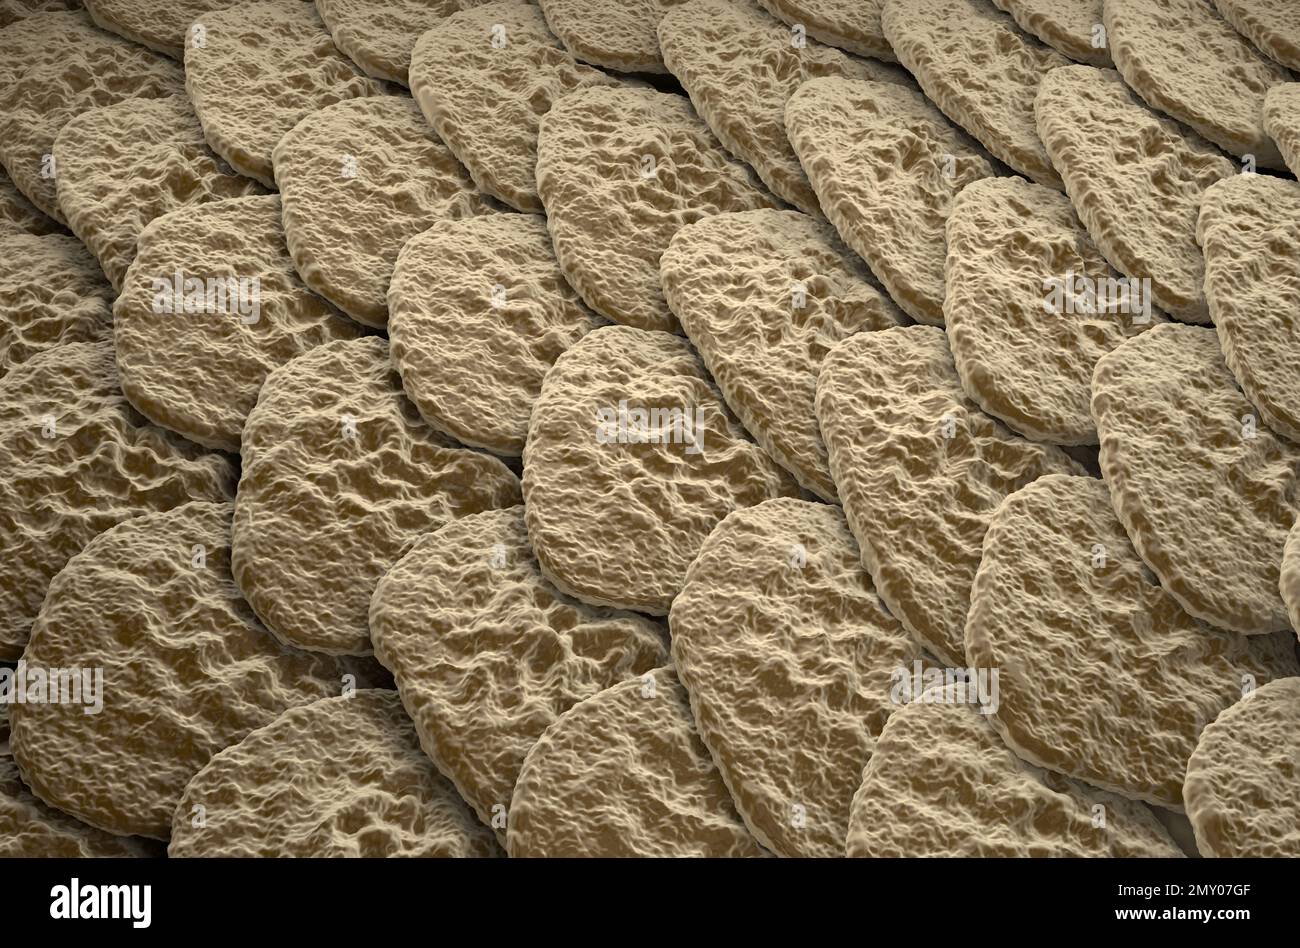 Oberfläche der gesunden menschlichen Haut (Epidermis) – isometrische Ansicht 3D Abbildung Stockfoto